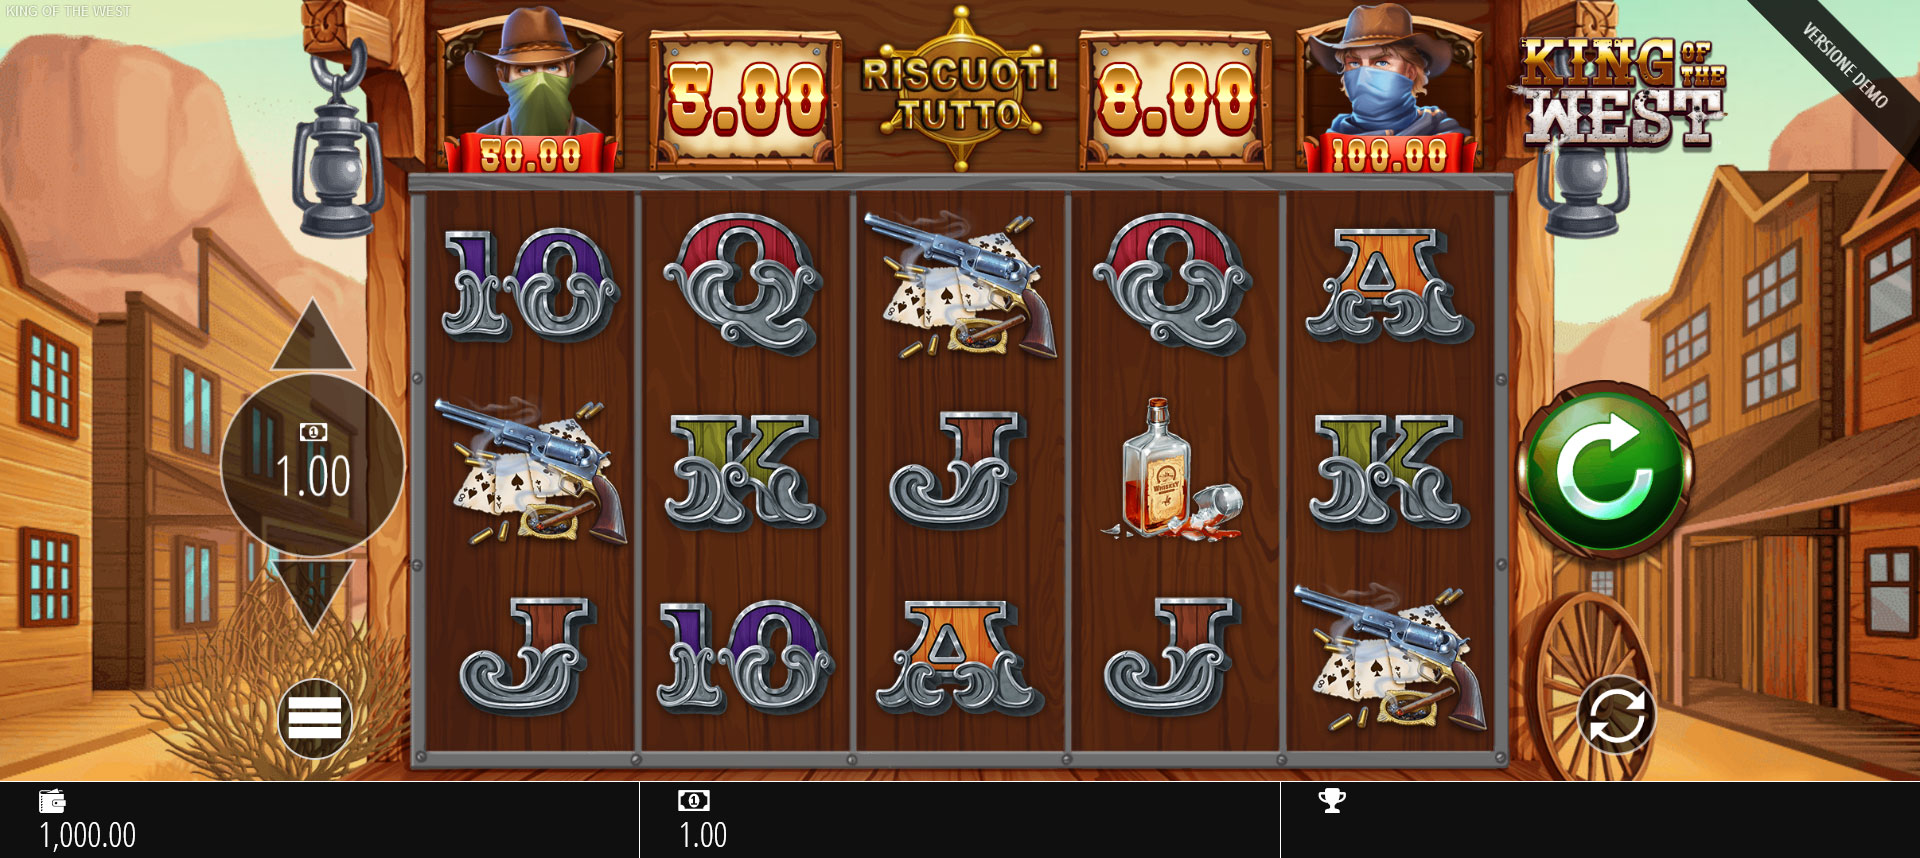 schermata del gioco slot machine king of the west